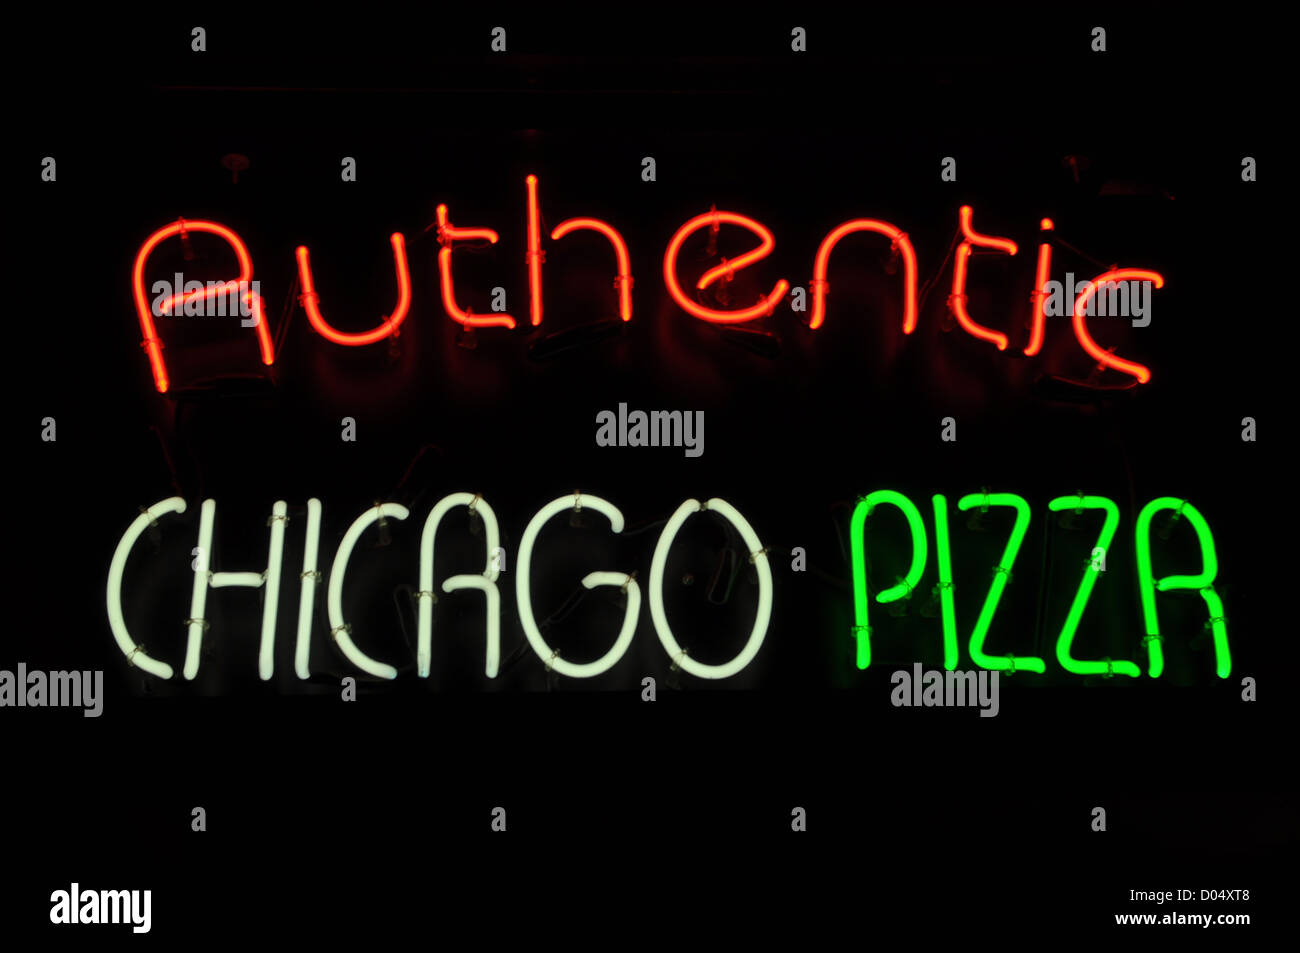 Chicago Pizza rosso neon bianco Segno verde Foto Stock